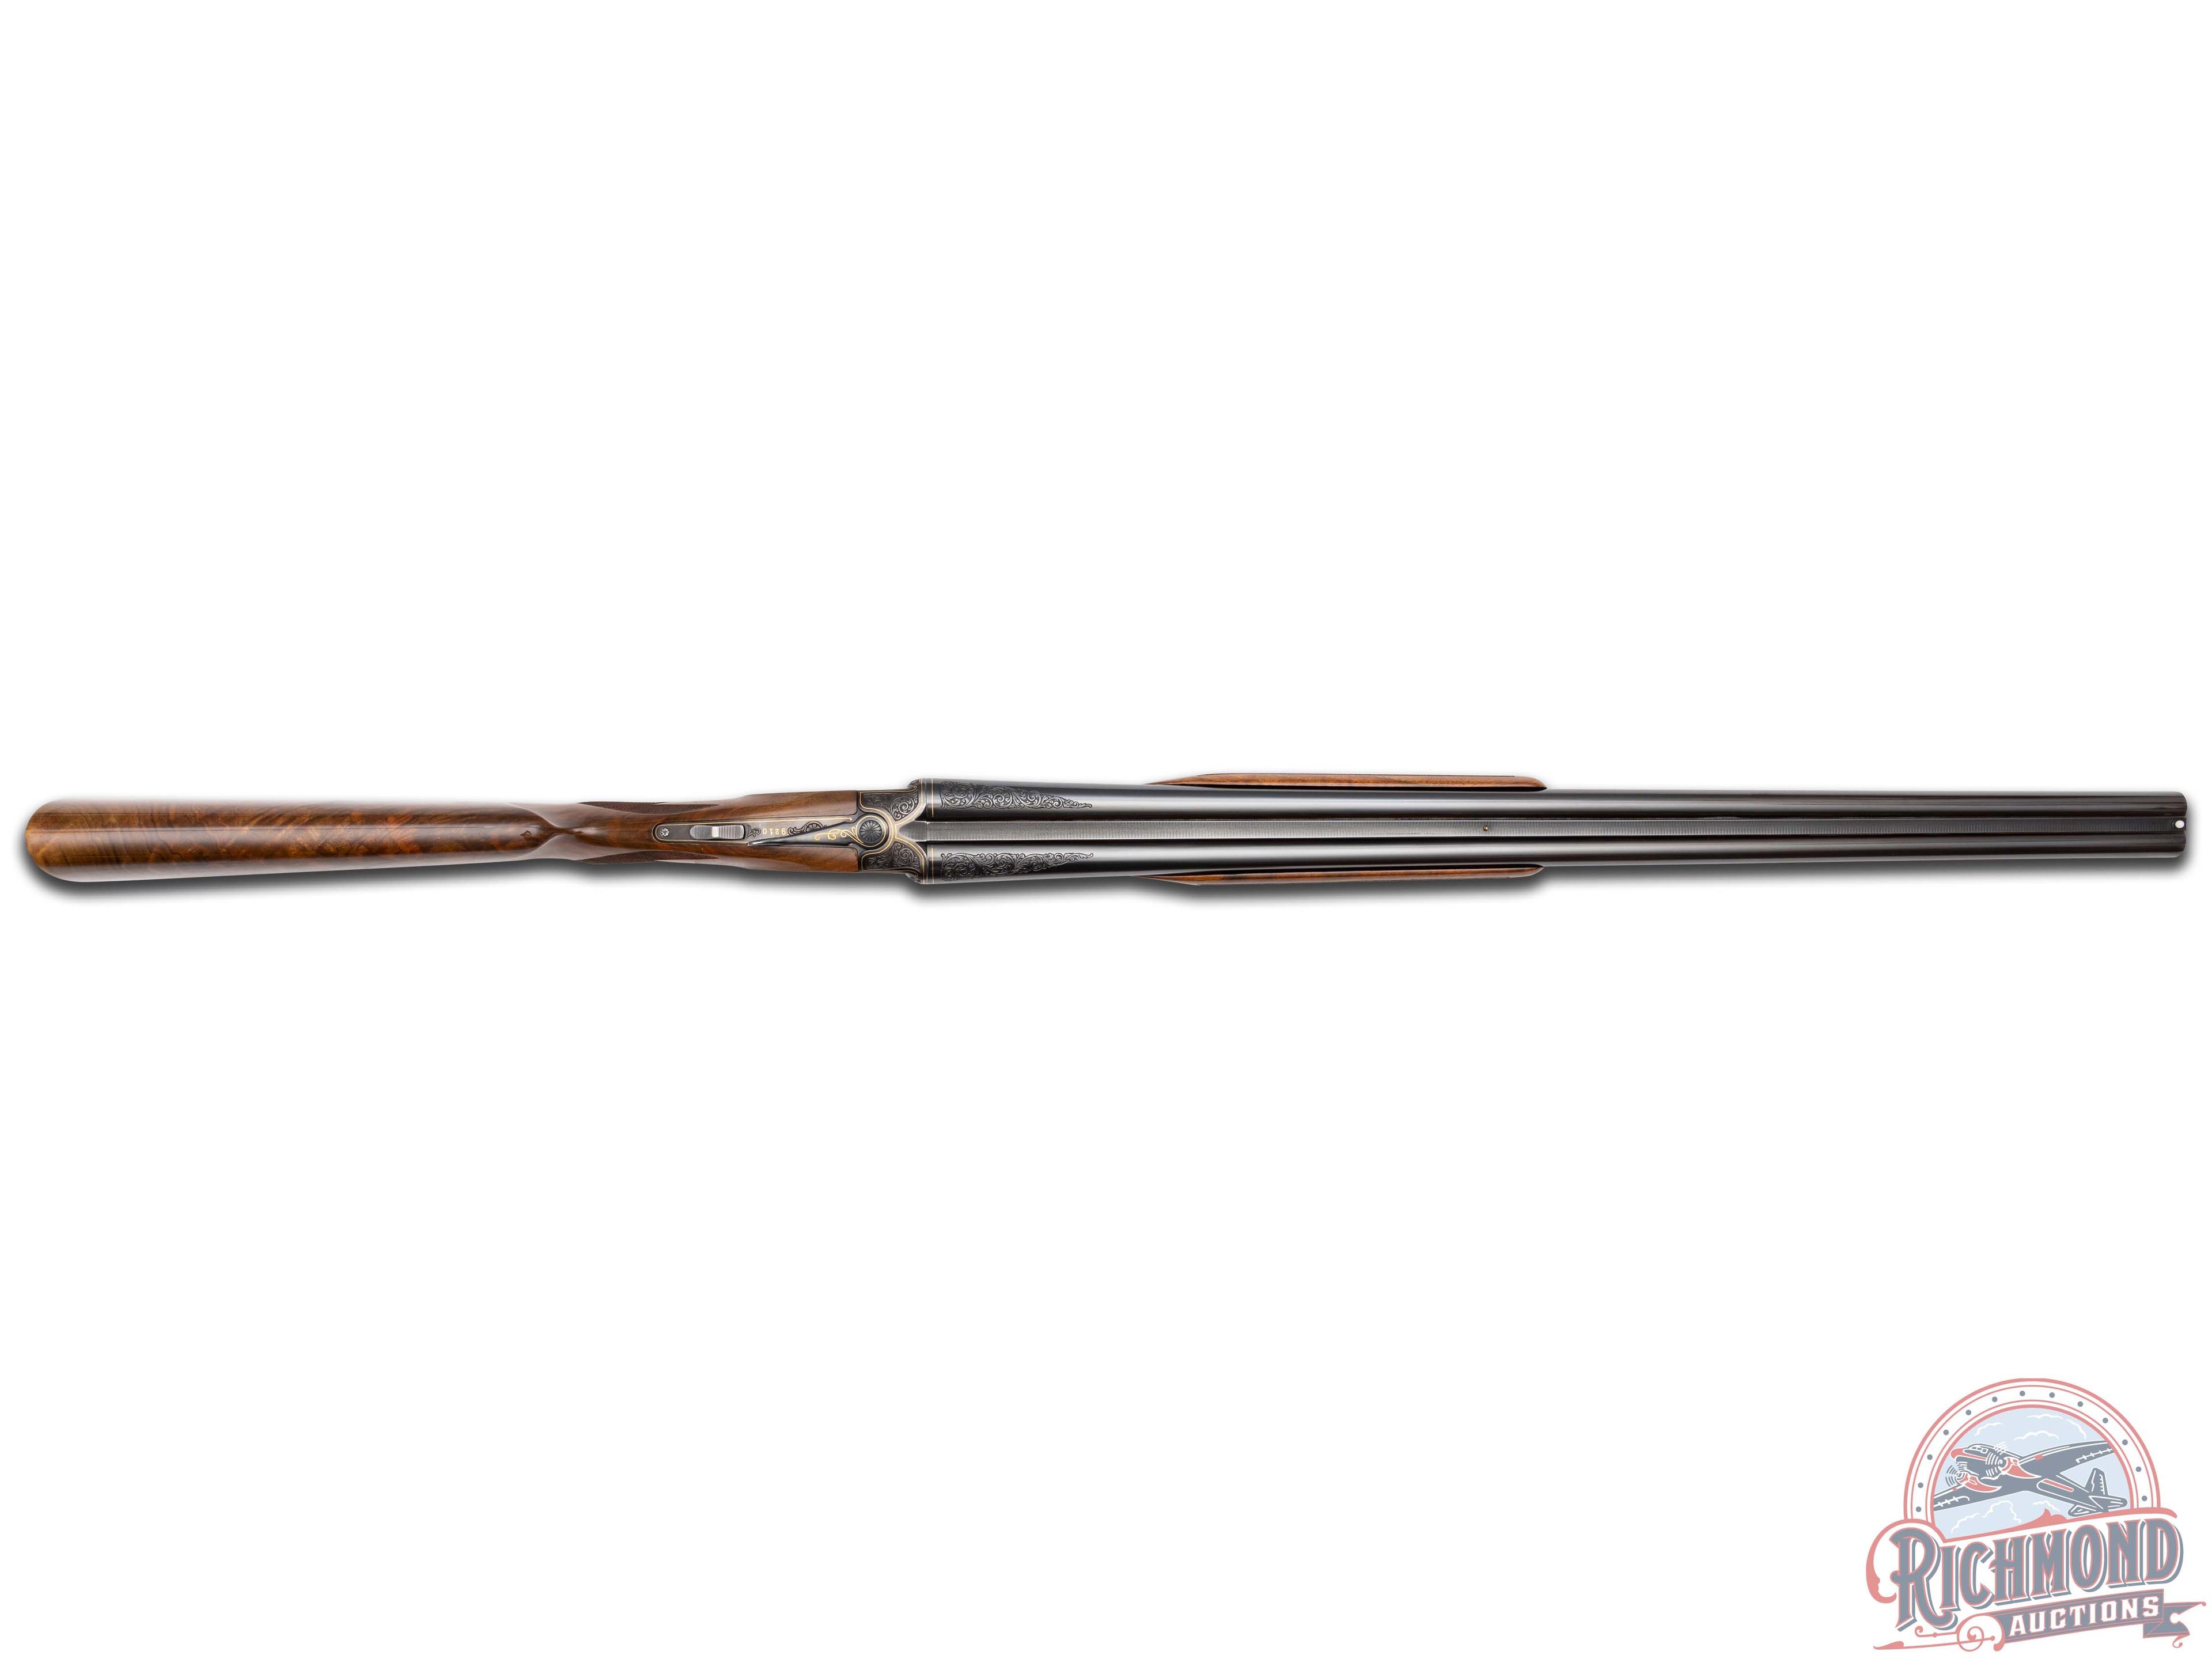 Superb Engraved 1937 Winchester Model 21 Skeet 20 Gauge Double Barrel Shotgun by Gino Cargnel